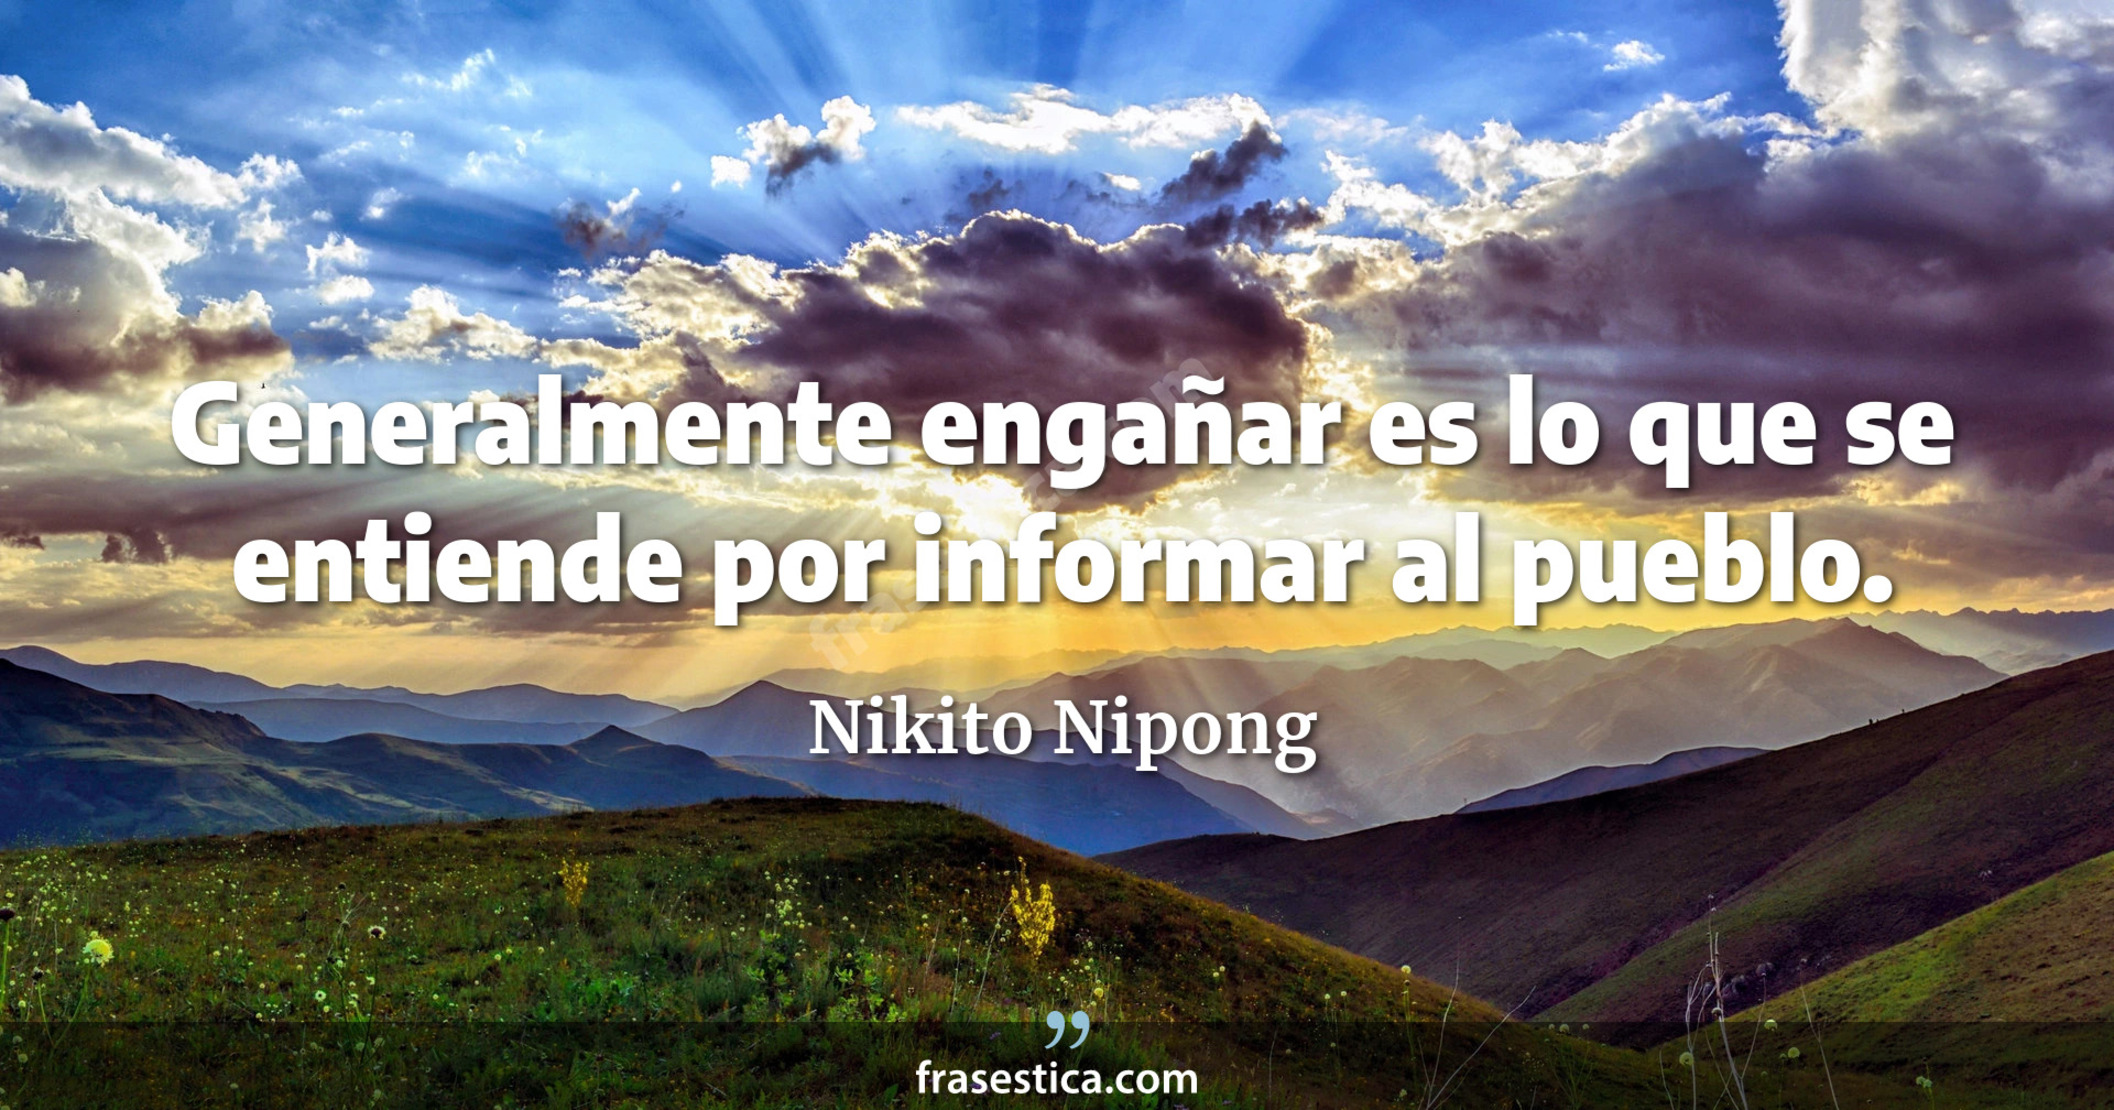 Generalmente engañar es lo que se entiende por informar al pueblo. - Nikito Nipong